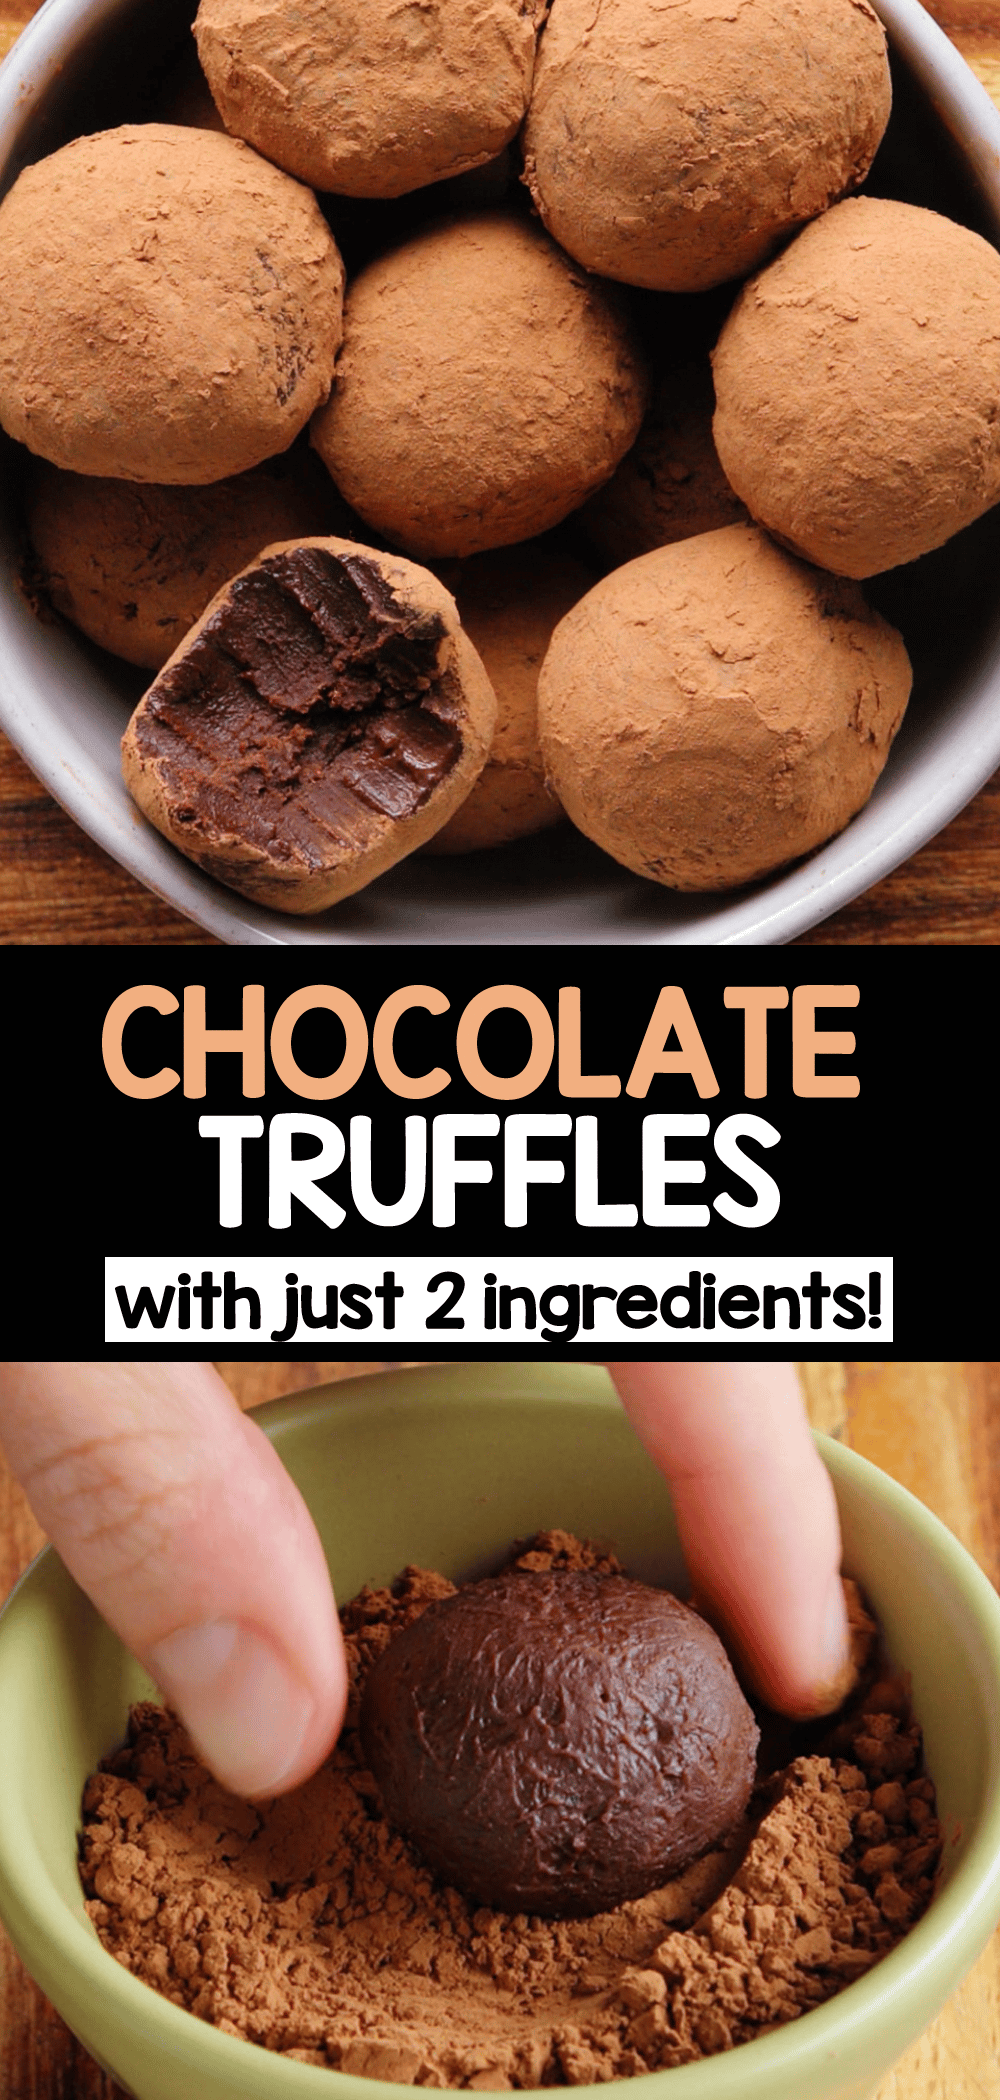 godiva dark truffles